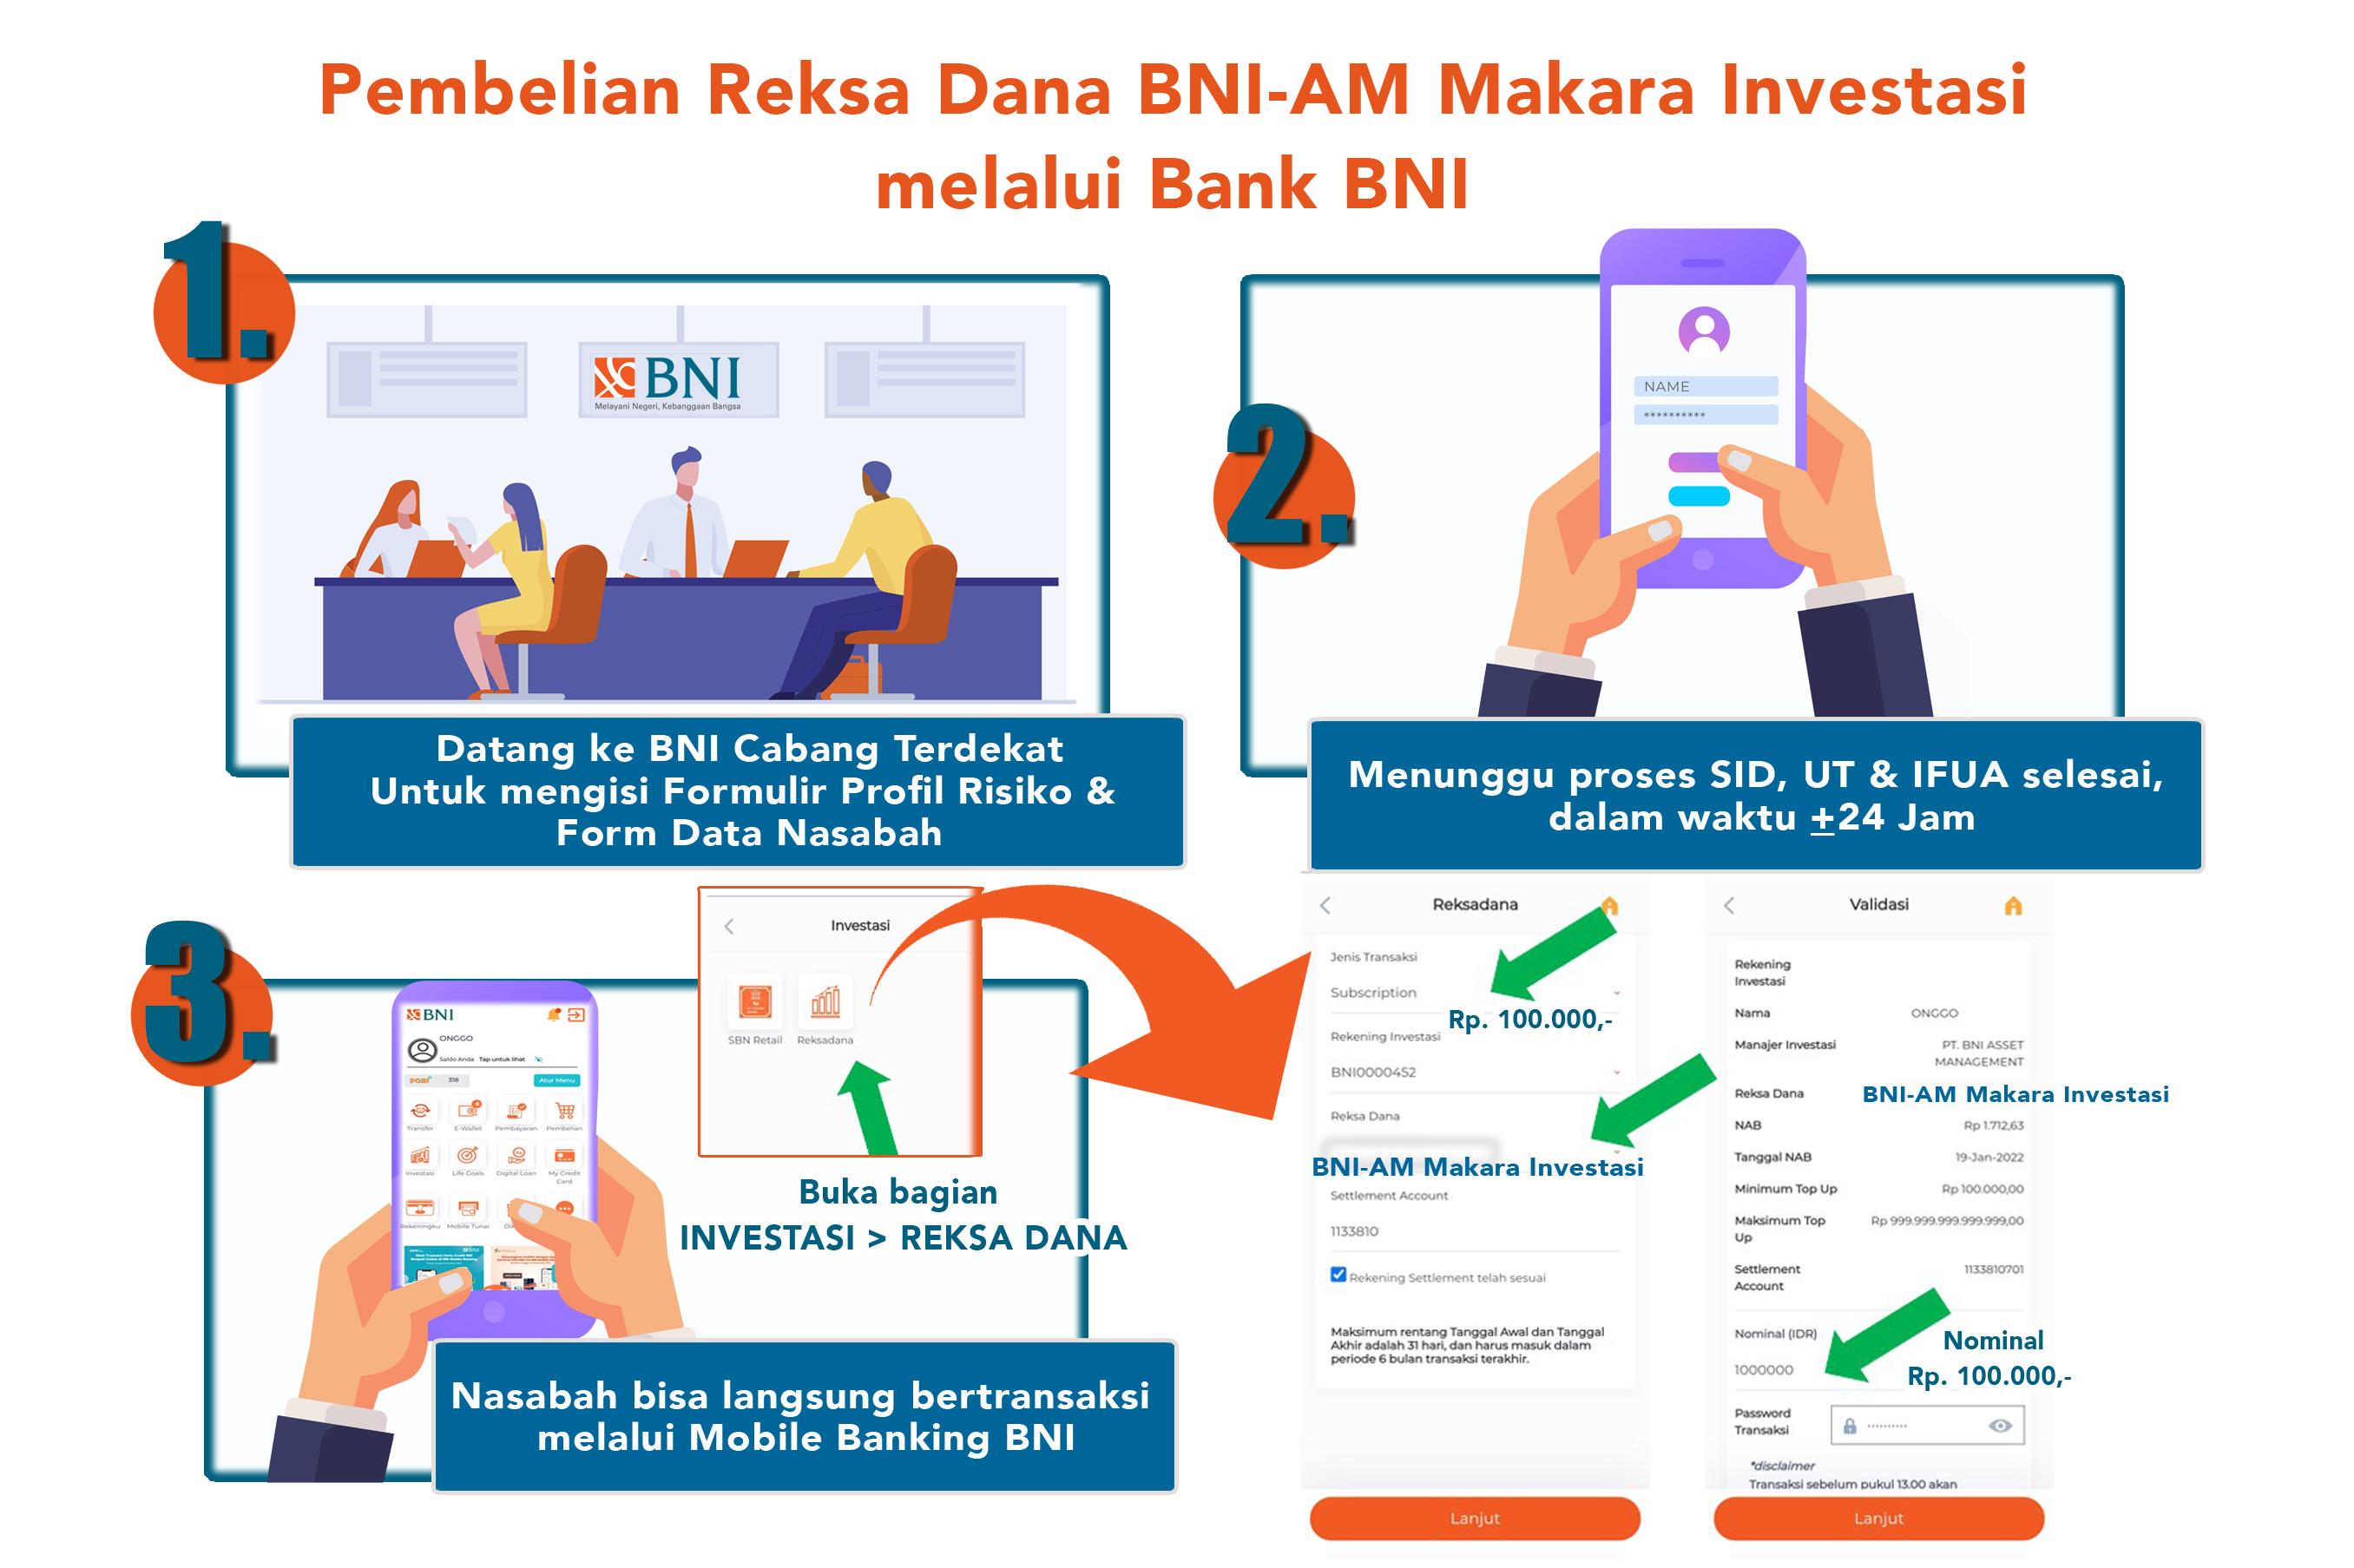 Tata cara pembelian Reksa Dana BNI-AM melalui Mobile Banking BNI